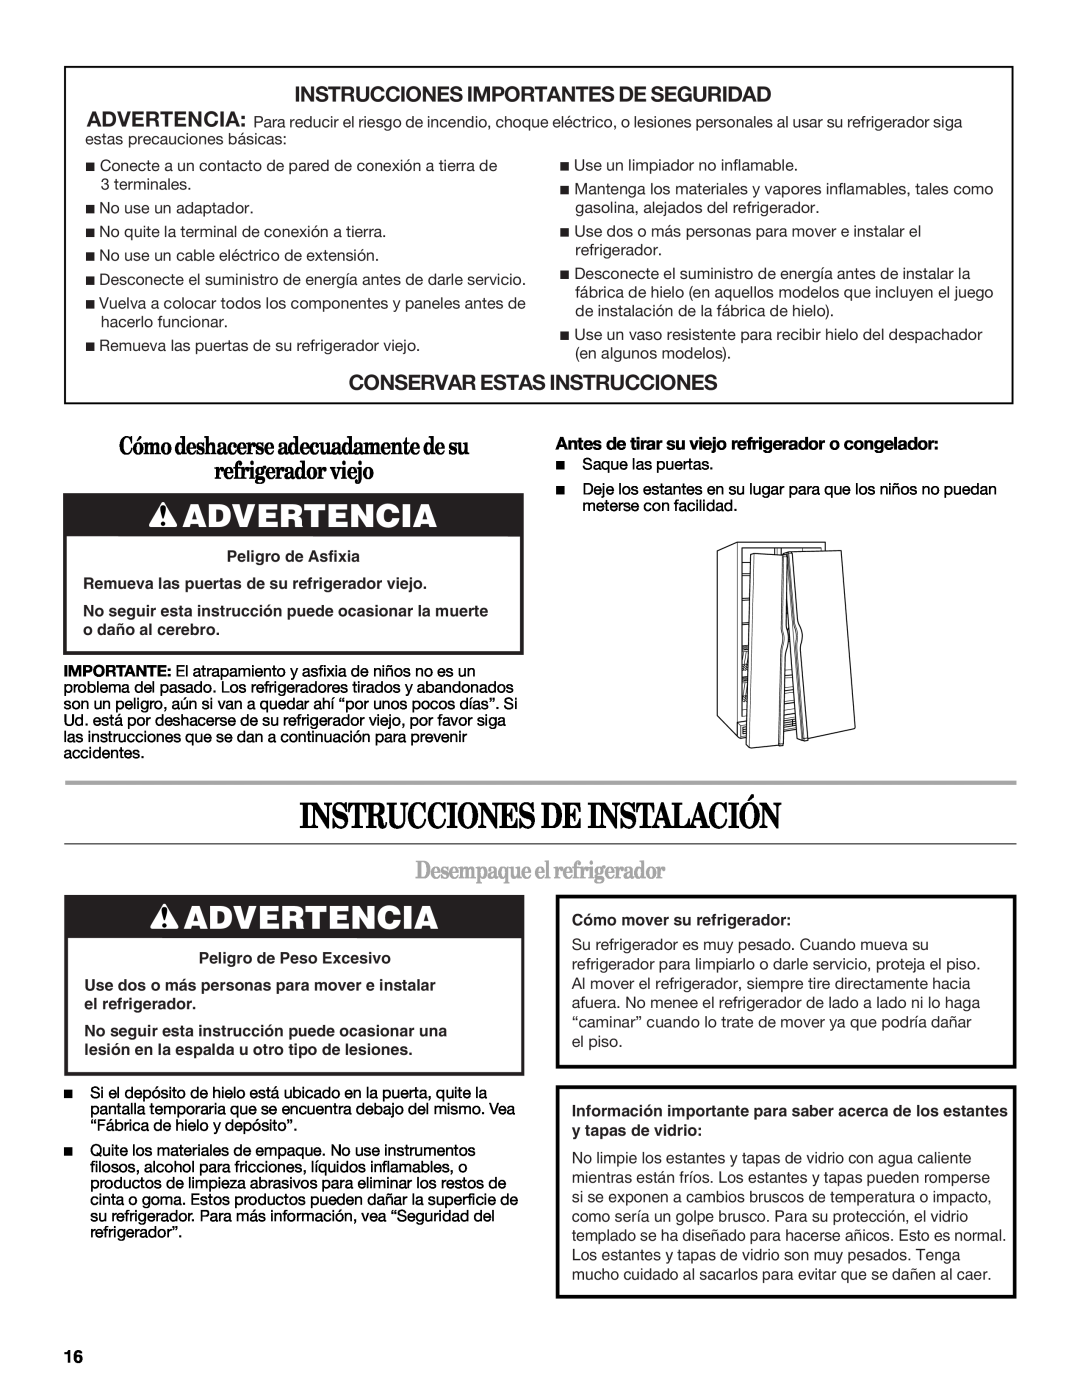 Whirlpool W10134555A Instrucciones De Instalación, Advertencia, Cómo deshacerse adecuadamente de su refrigerador viejo 